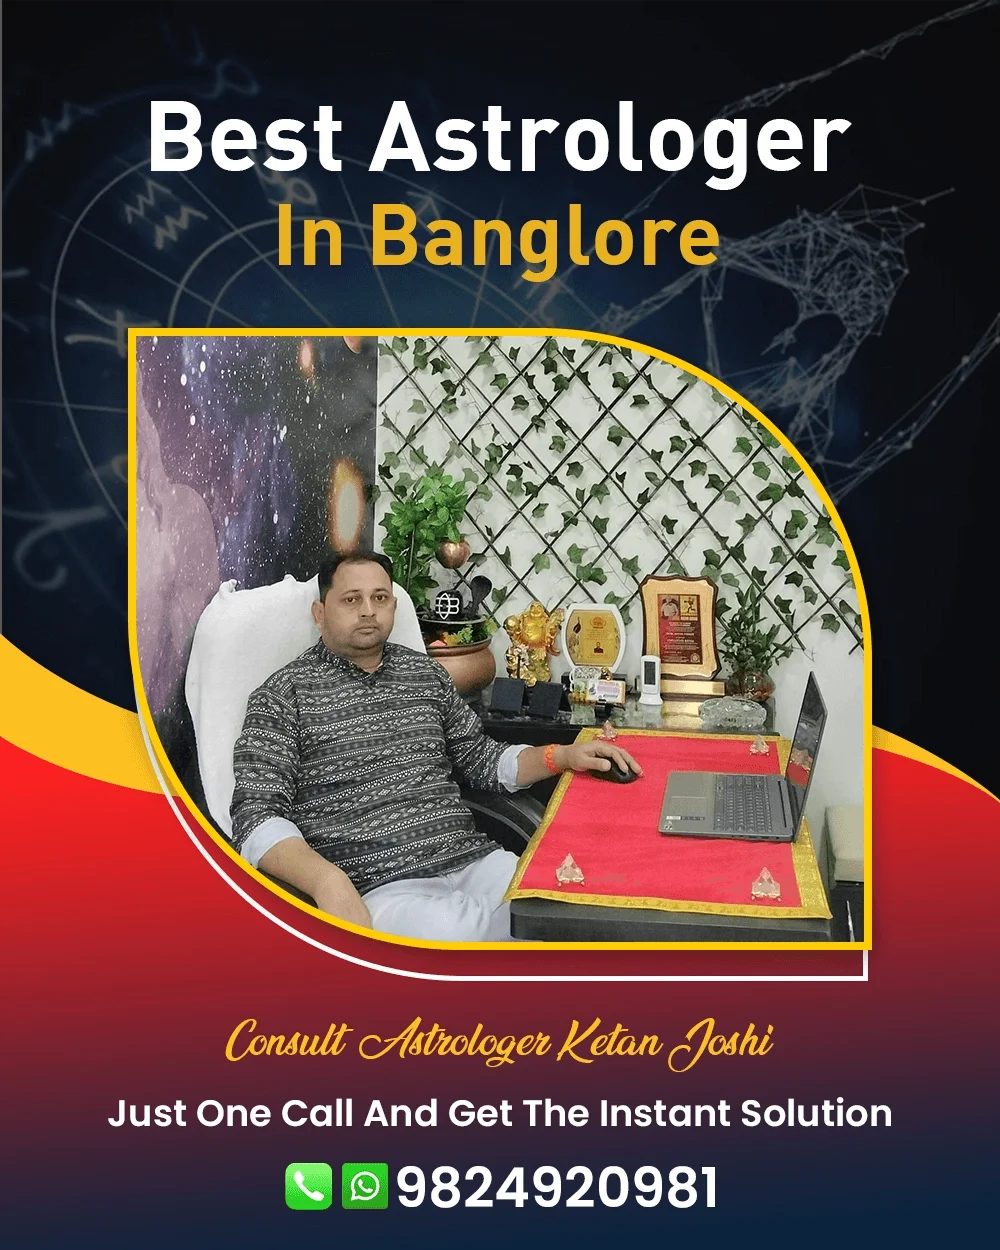 Best Astrologer In Banglore